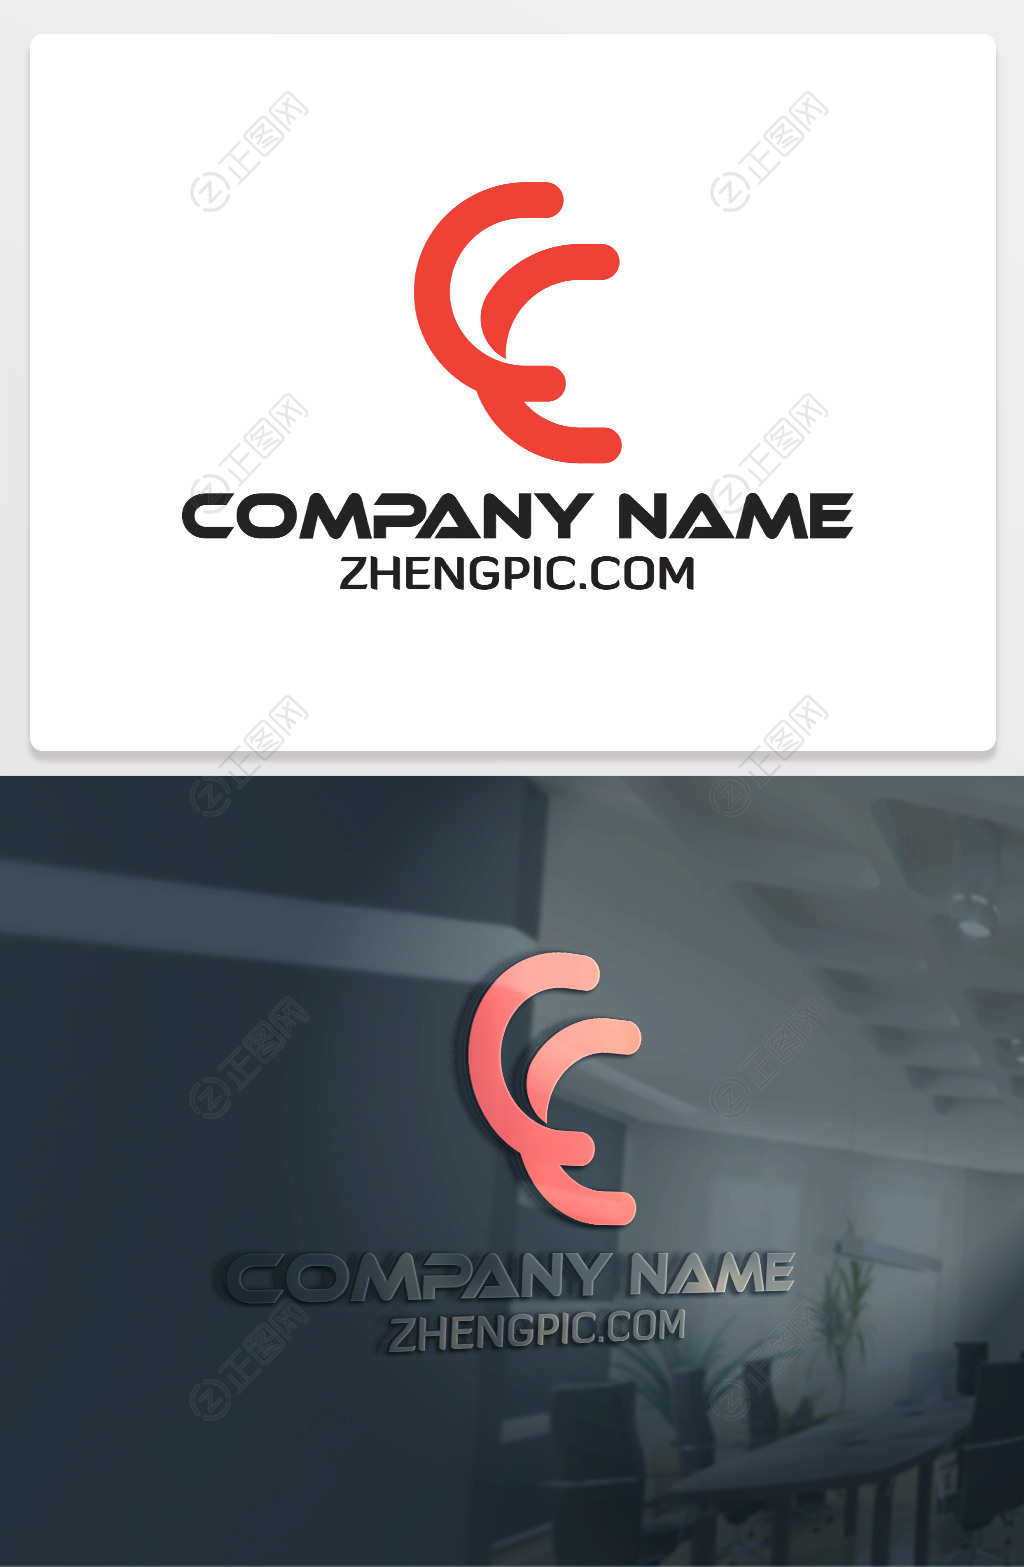 Cc字母徽标 向量例证. 插画 包括有 总公司, 概念性, 象征, 公司, 图标, 创造性, 急性, 数字式 - 192022559